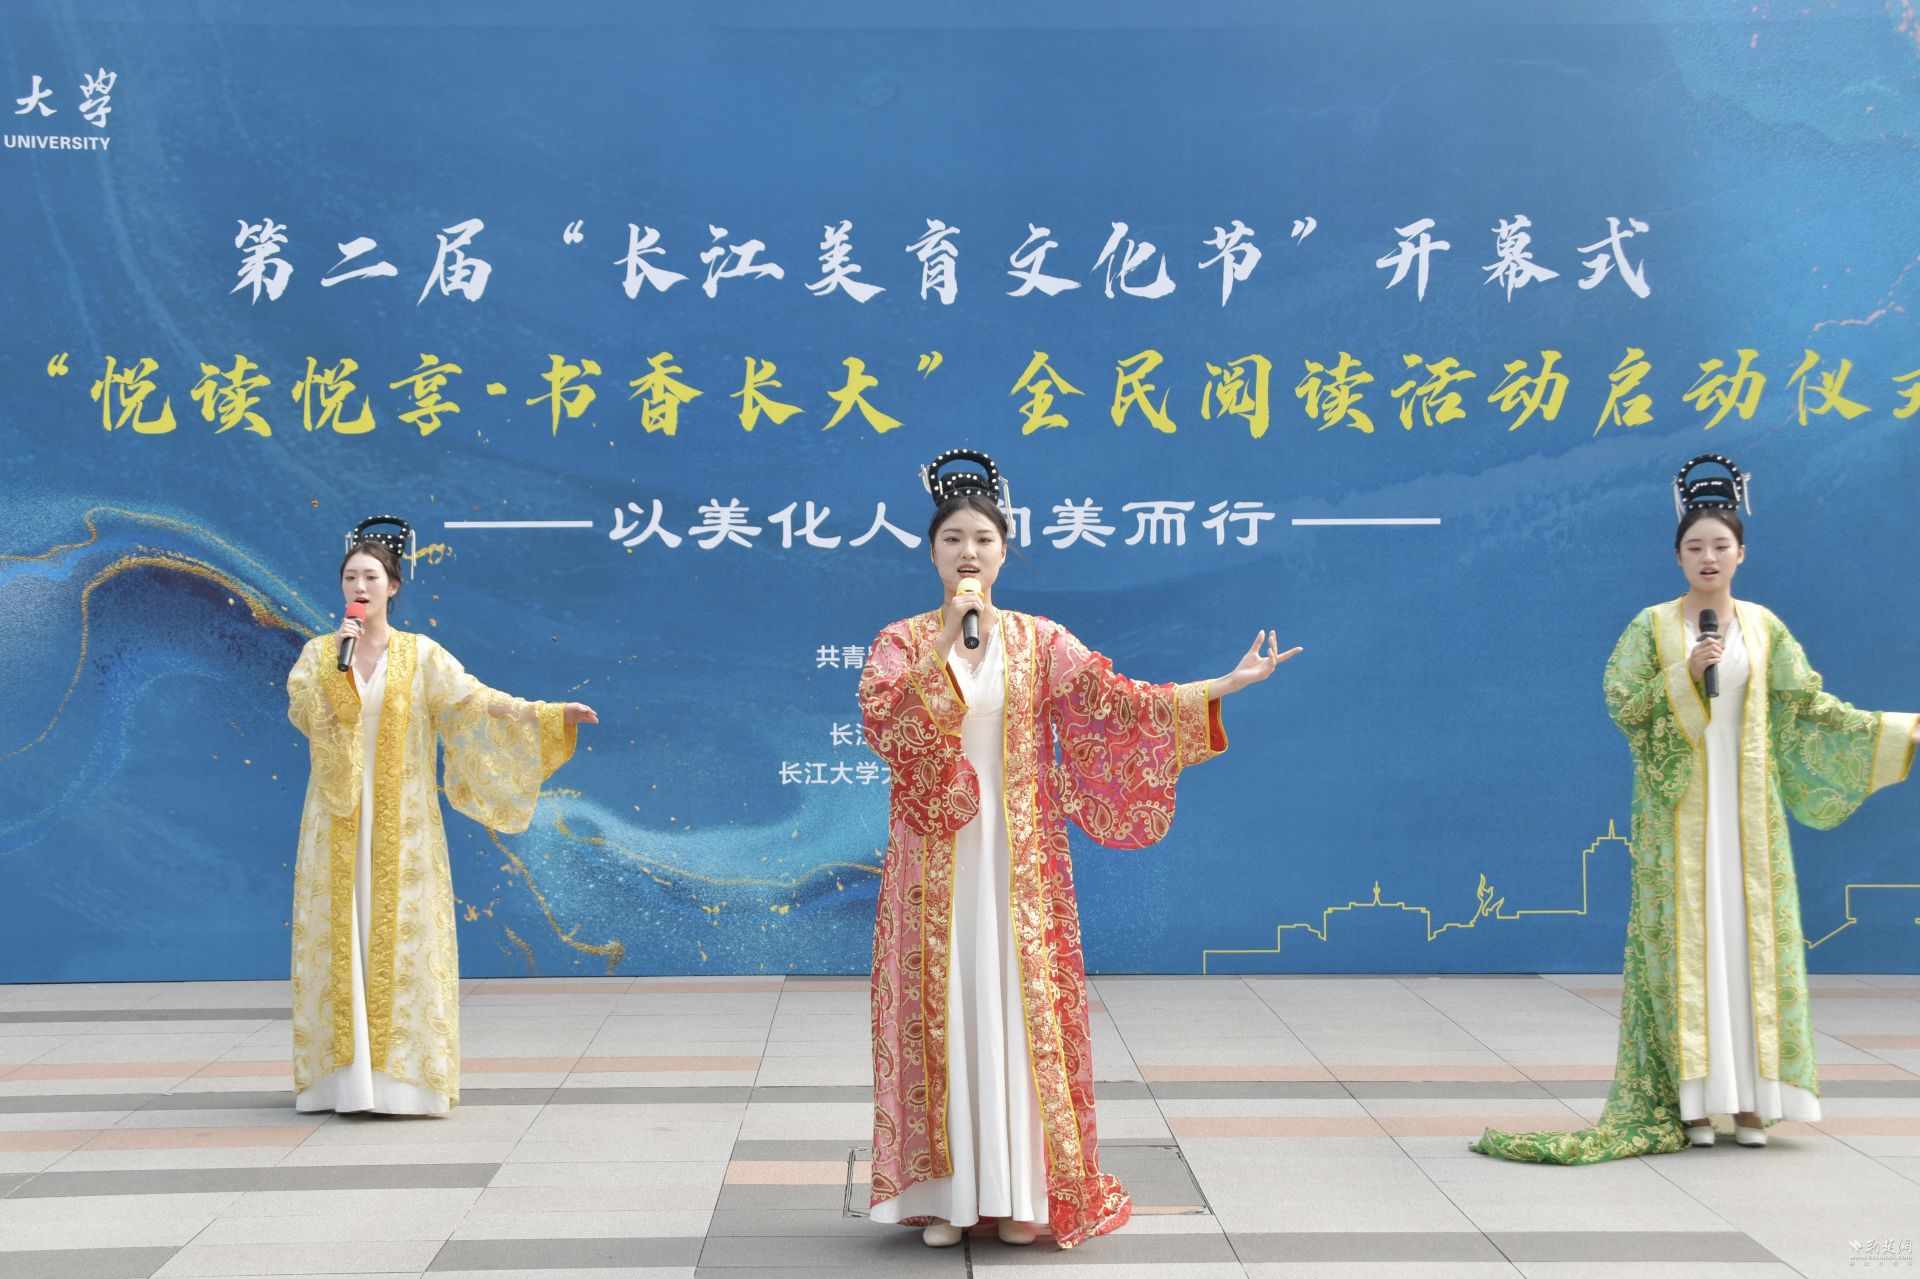 美育浸润书香 长江大学举办第二届美育文化节